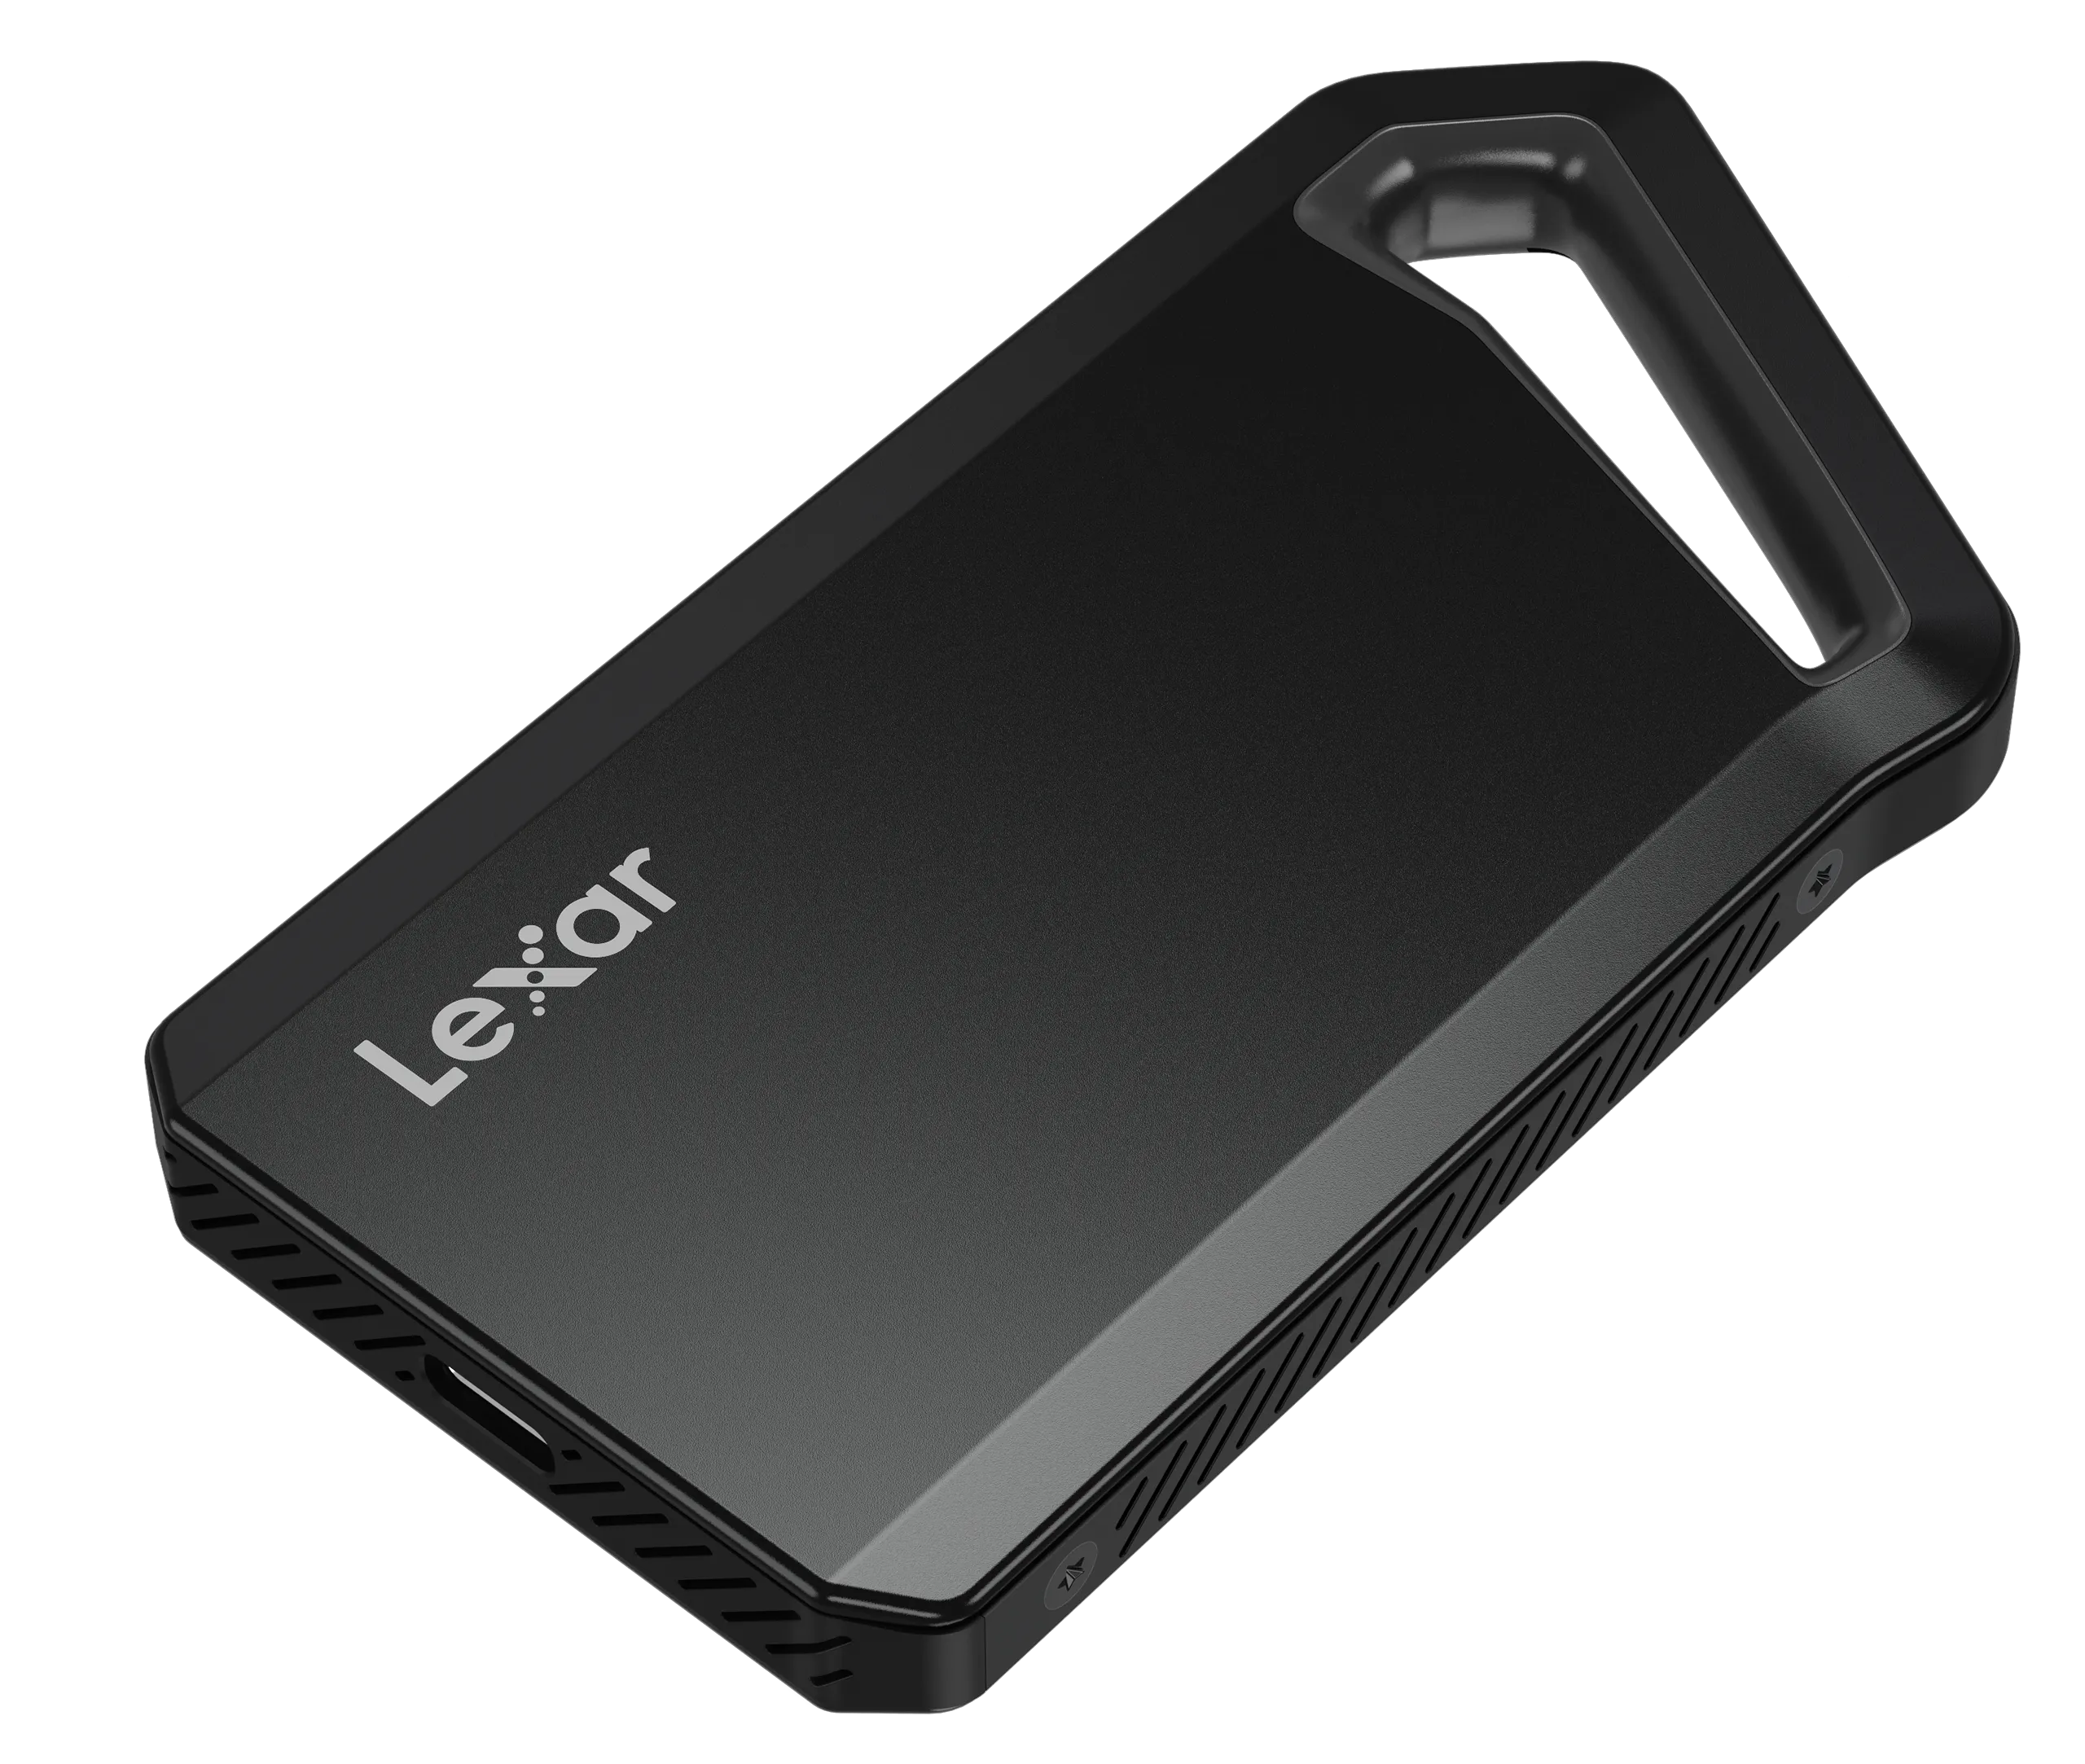 Lexar giới thiệu ổ cứng SSD di động SL600 với tốc độ lên đến 2000MB/s